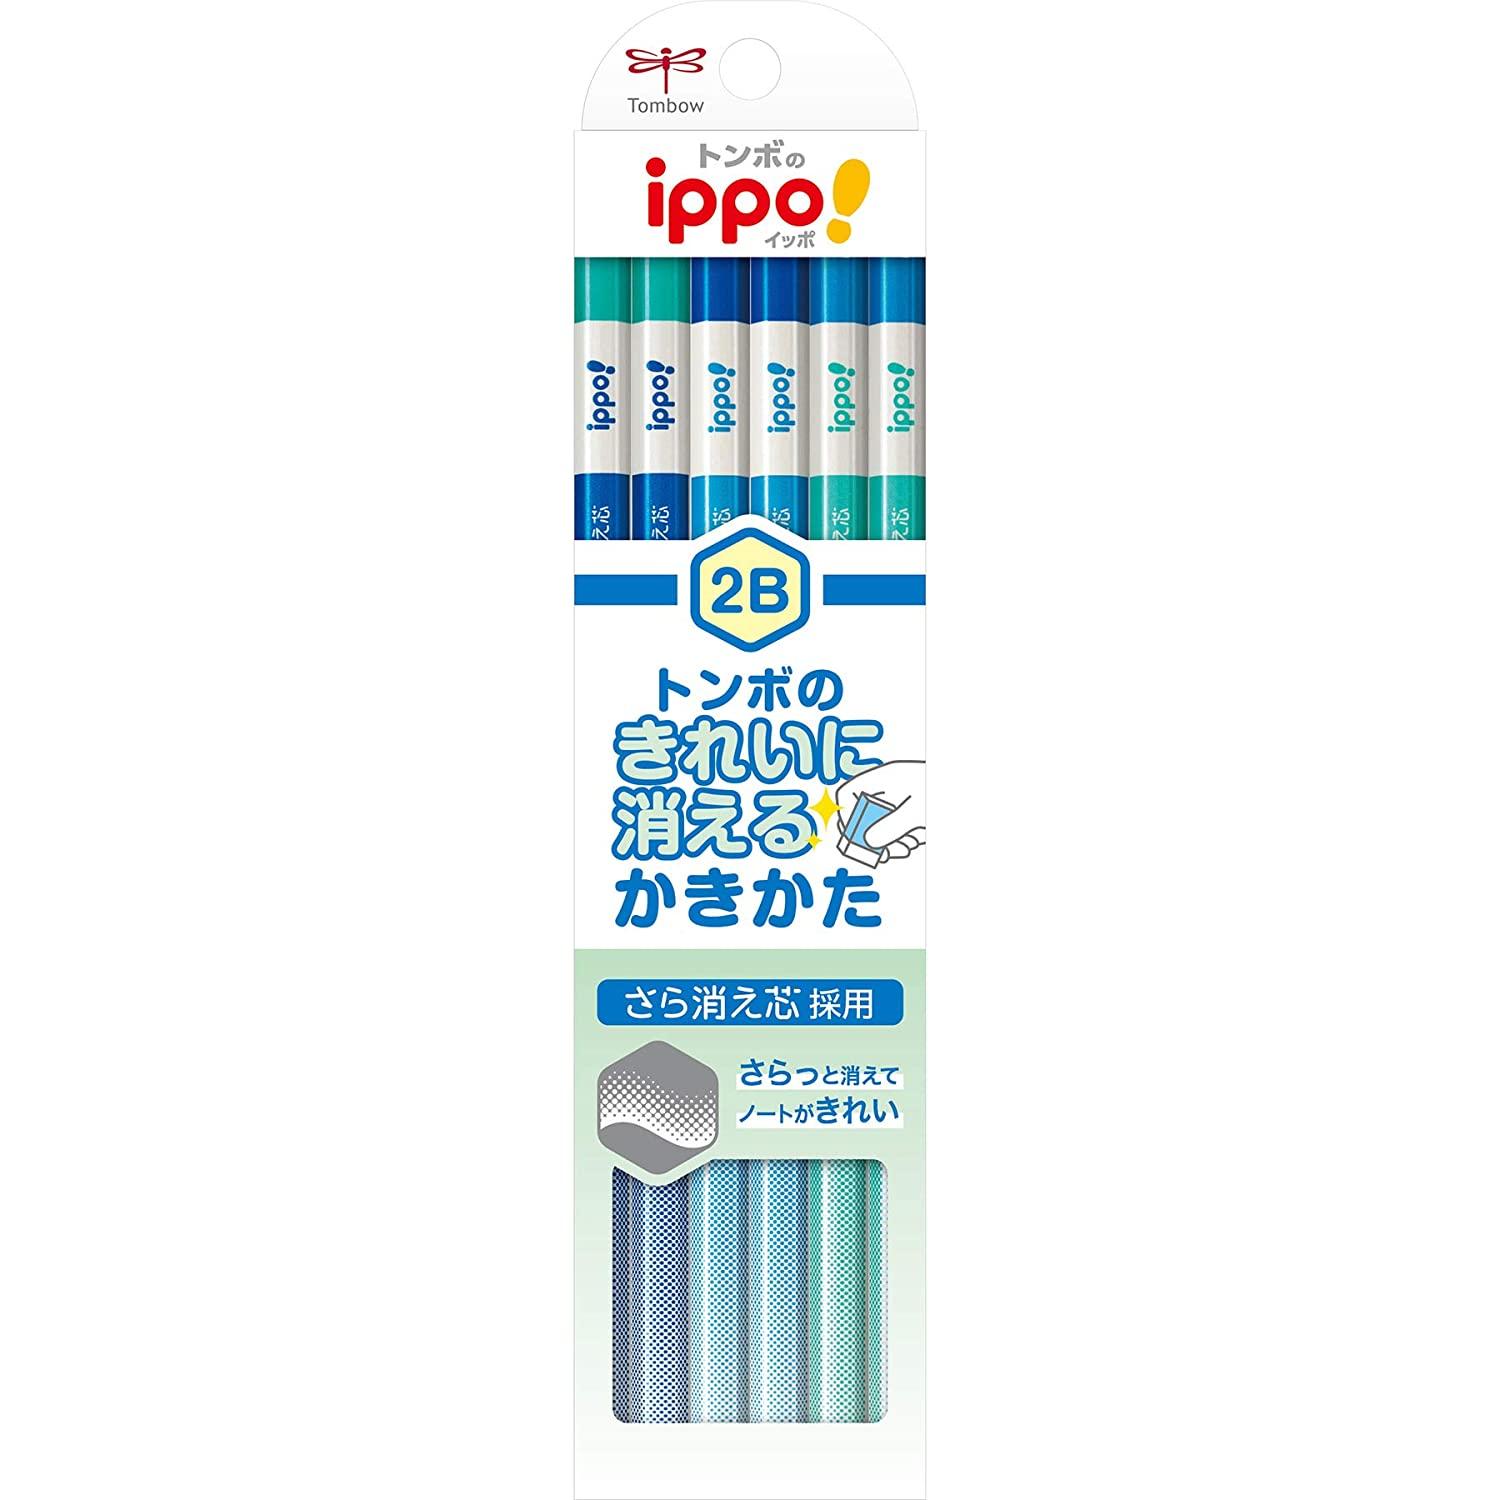 トンボ鉛筆 鉛筆 ippo! きれいに消えるかきかたえんぴつ 2B 1ダース ブルー KB-KSKM01-2B